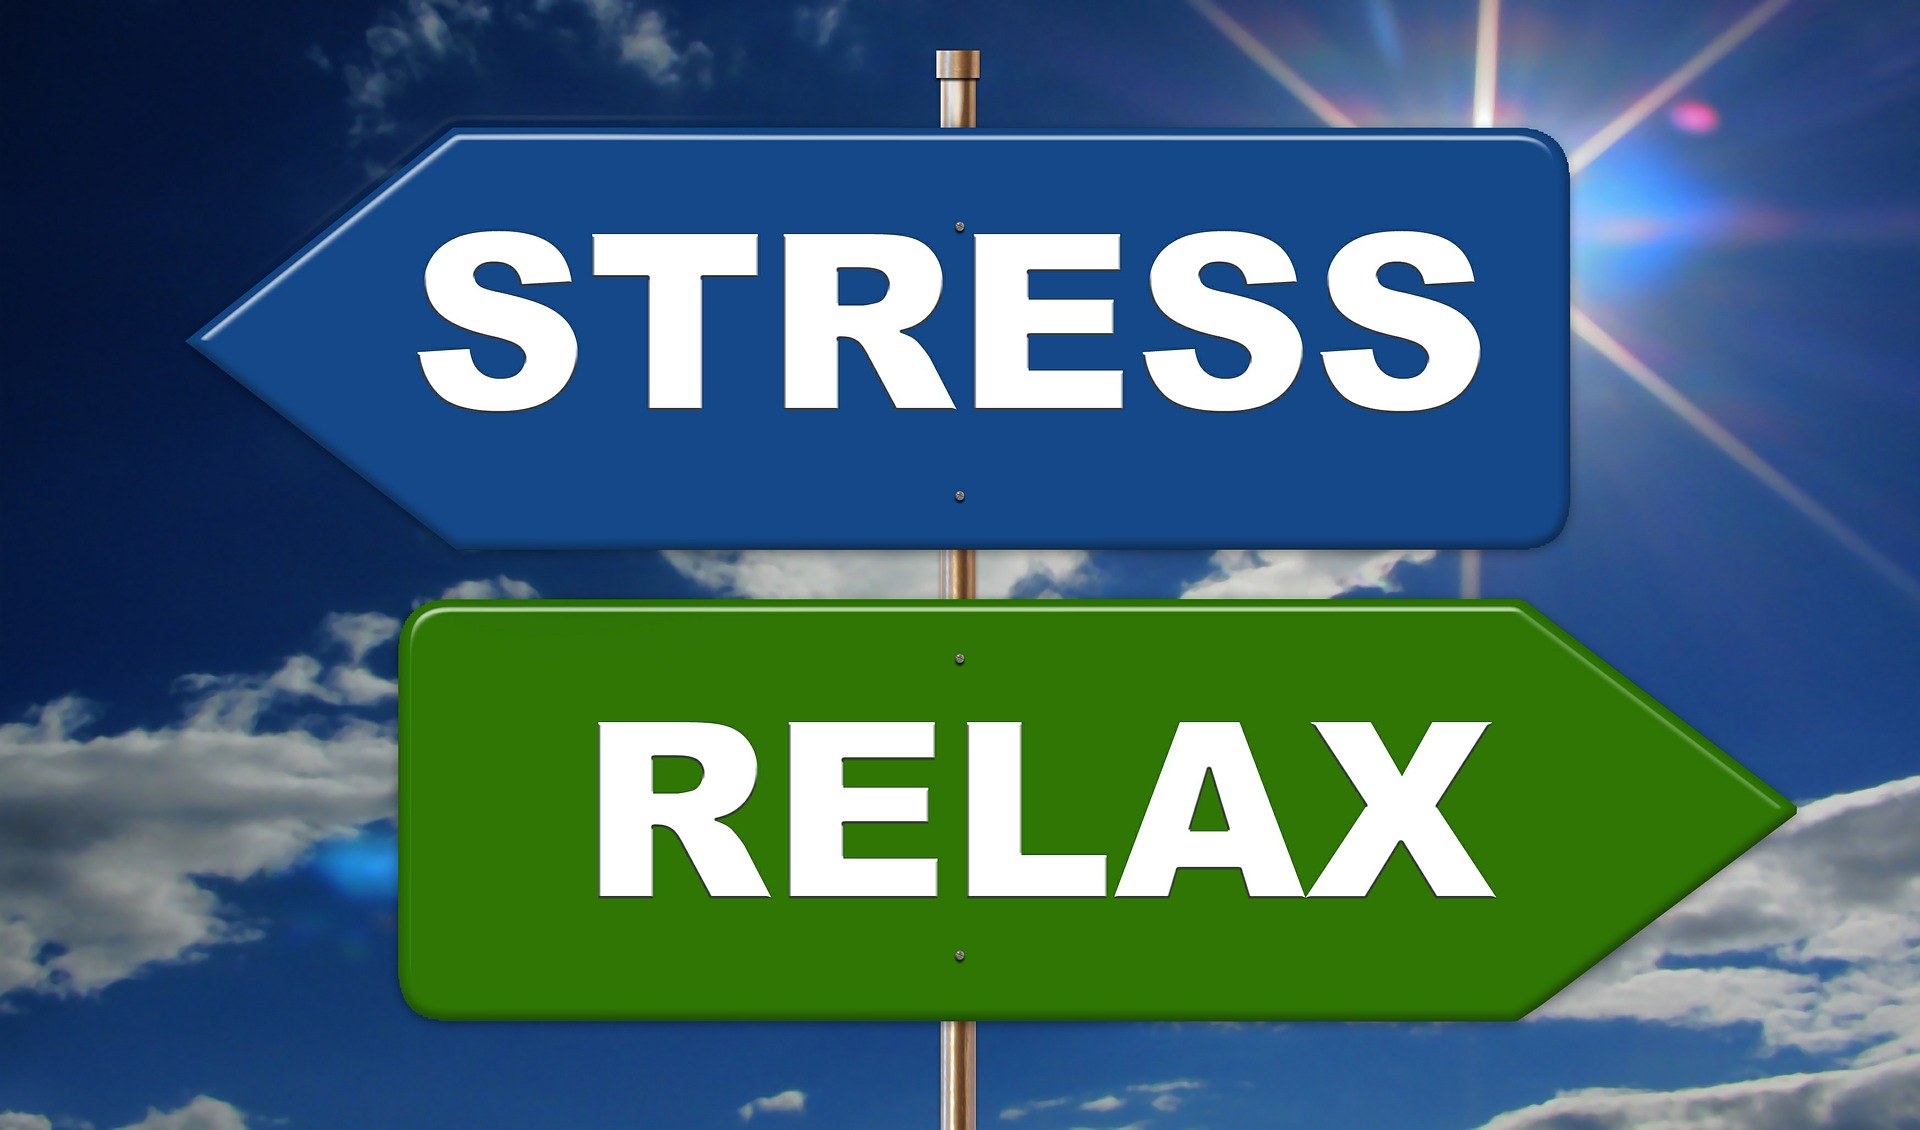 panneaus de direction stress vs relax